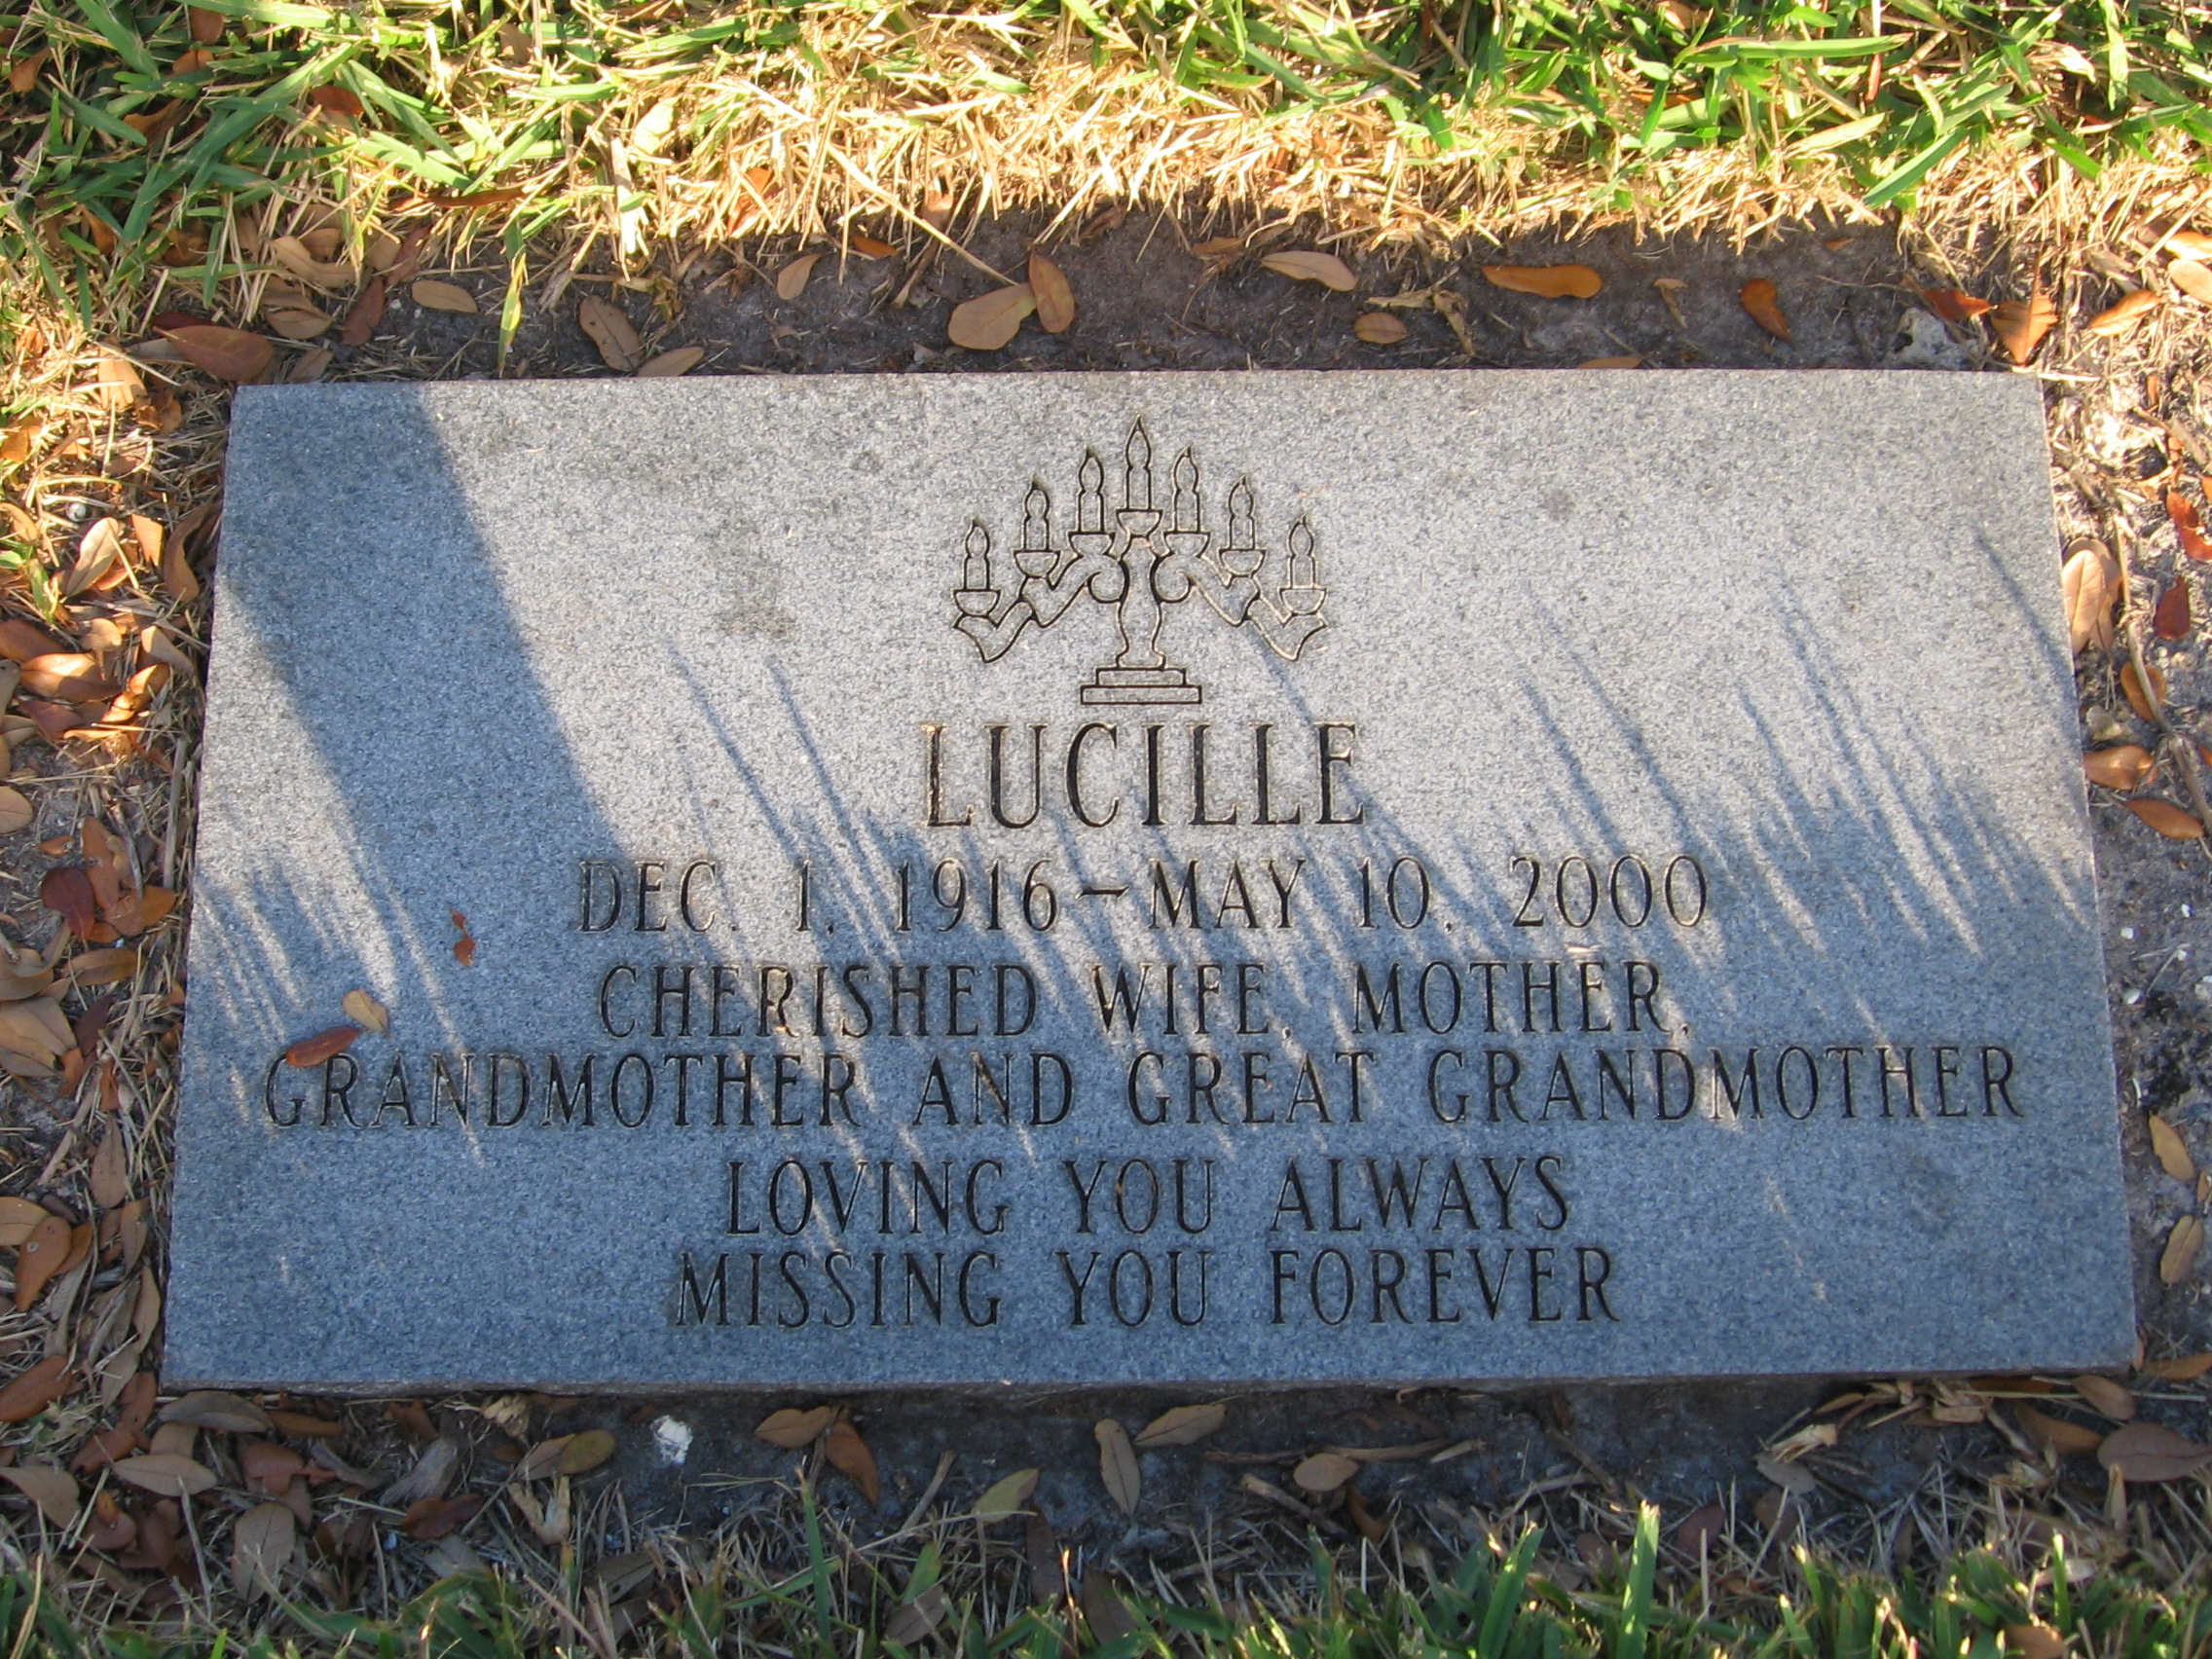 Lucille Skurow